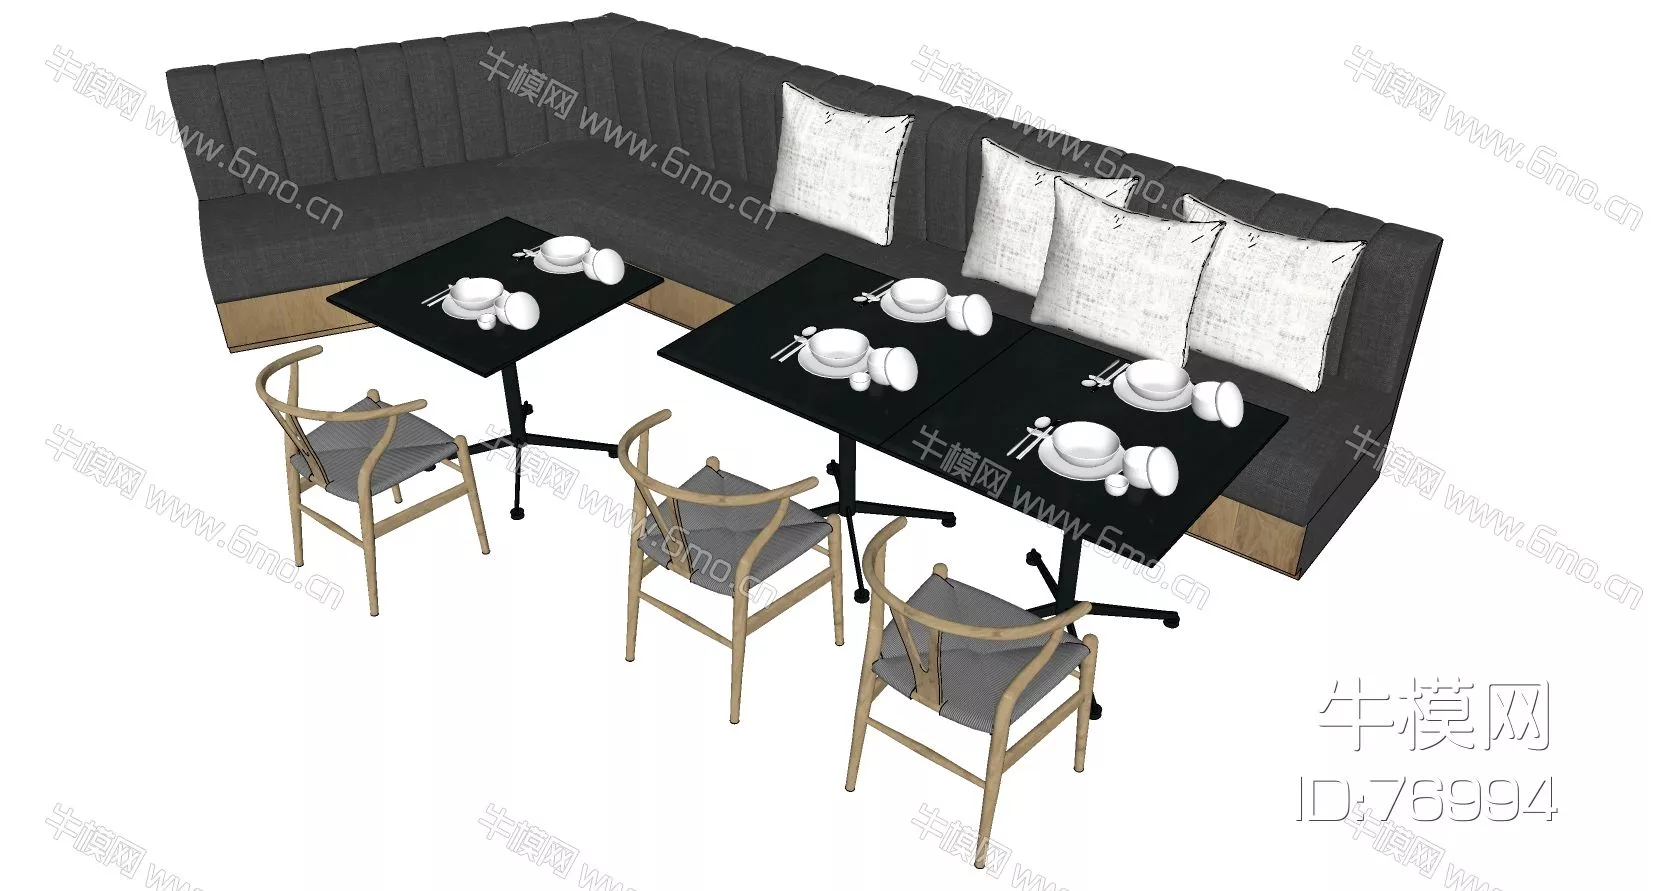 MODERN DINING TABLE SET - SKETCHUP 3D MODEL - ENSCAPE - 76994